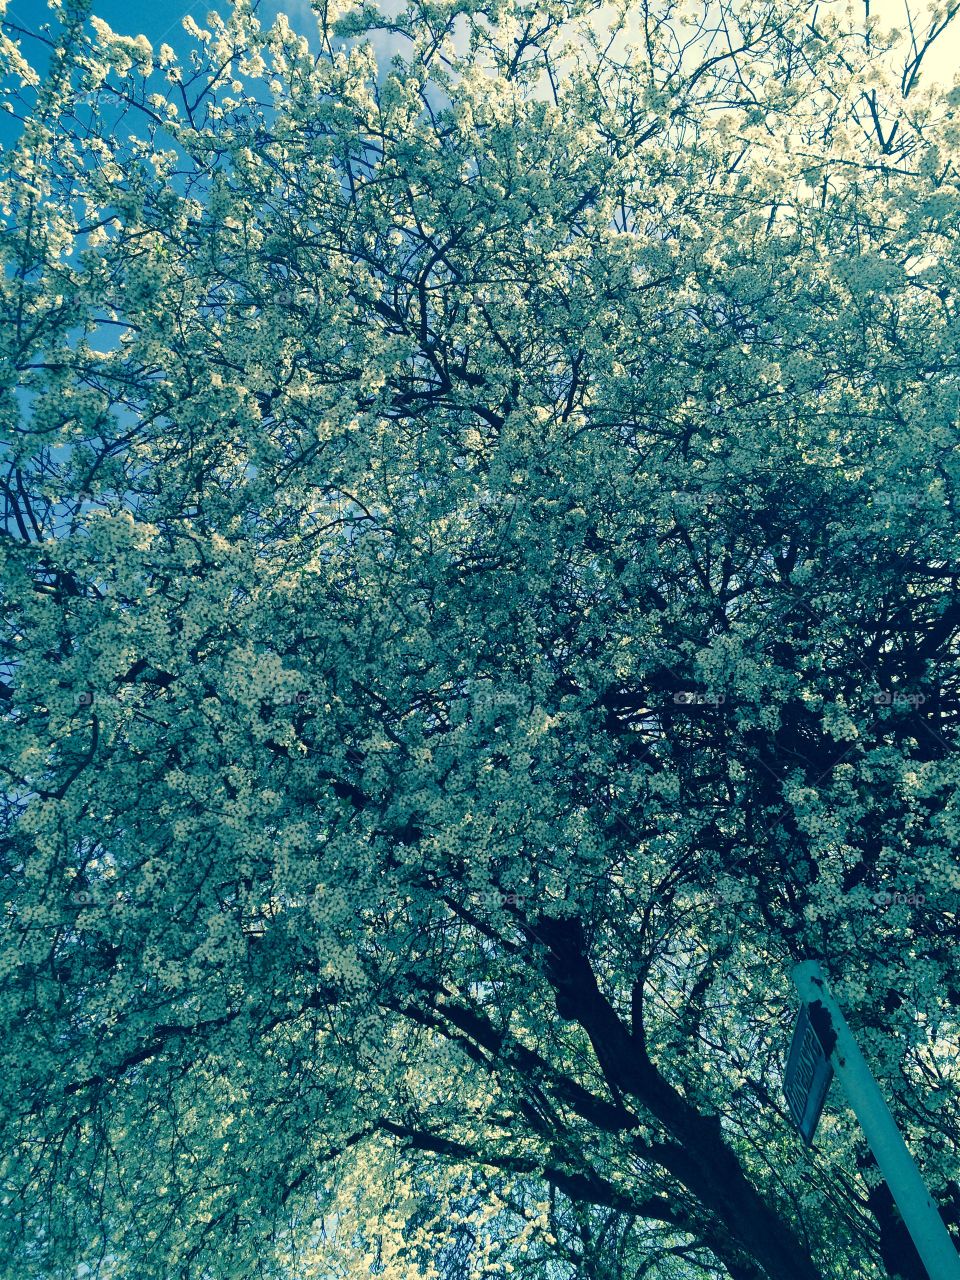 Bloom. Blooming tree